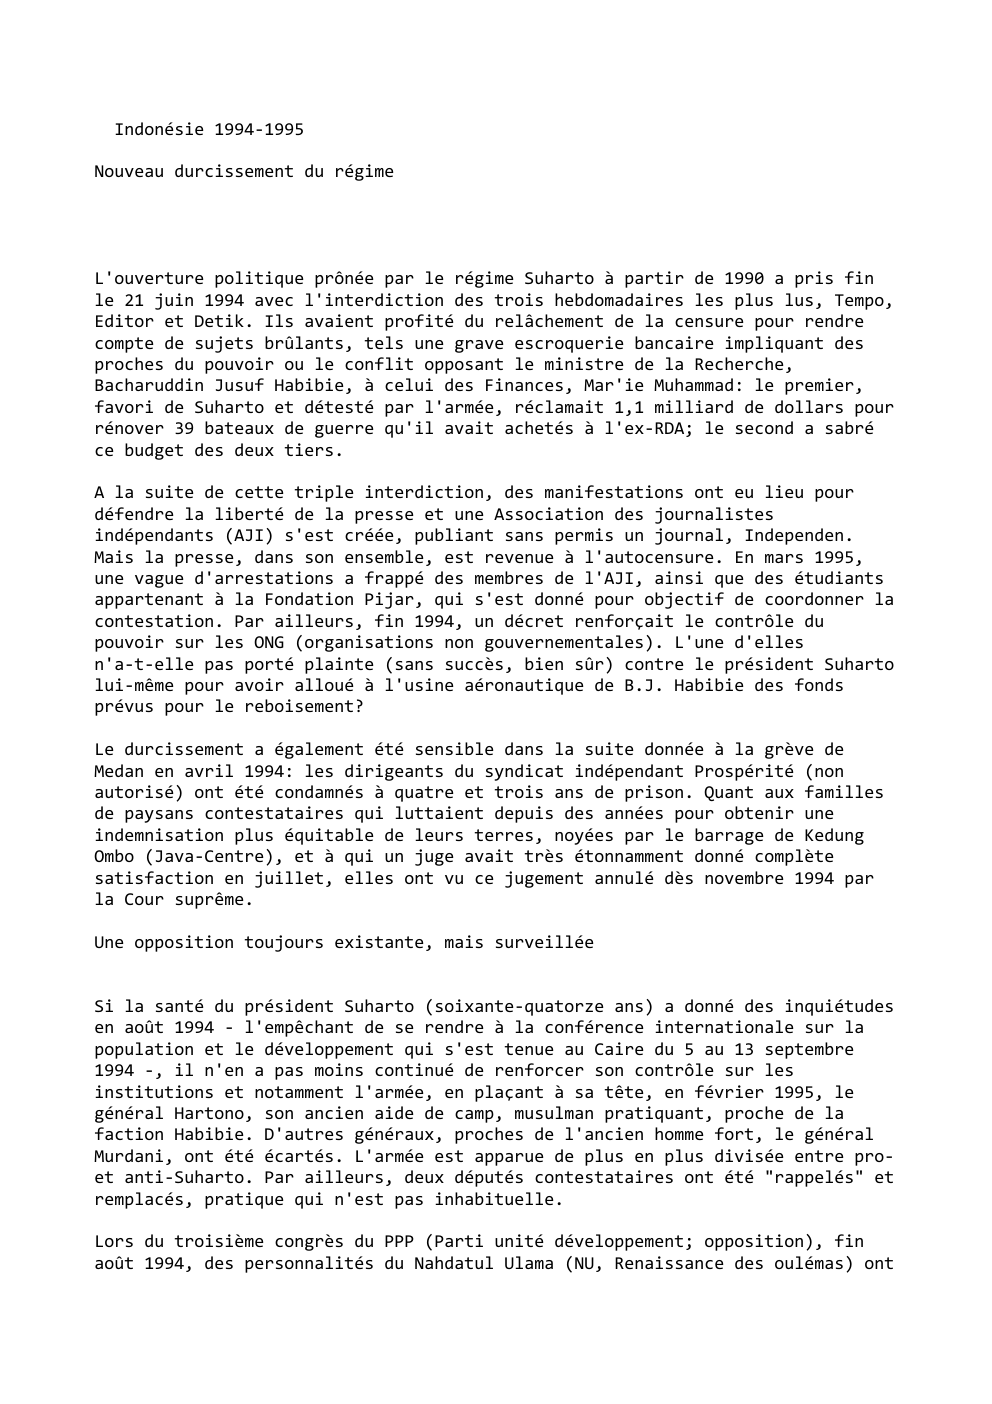 Prévisualisation du document Indonésie 1994-1995
Nouveau durcissement du régime

L'ouverture politique prônée par le régime Suharto à partir de 1990 a pris fin...